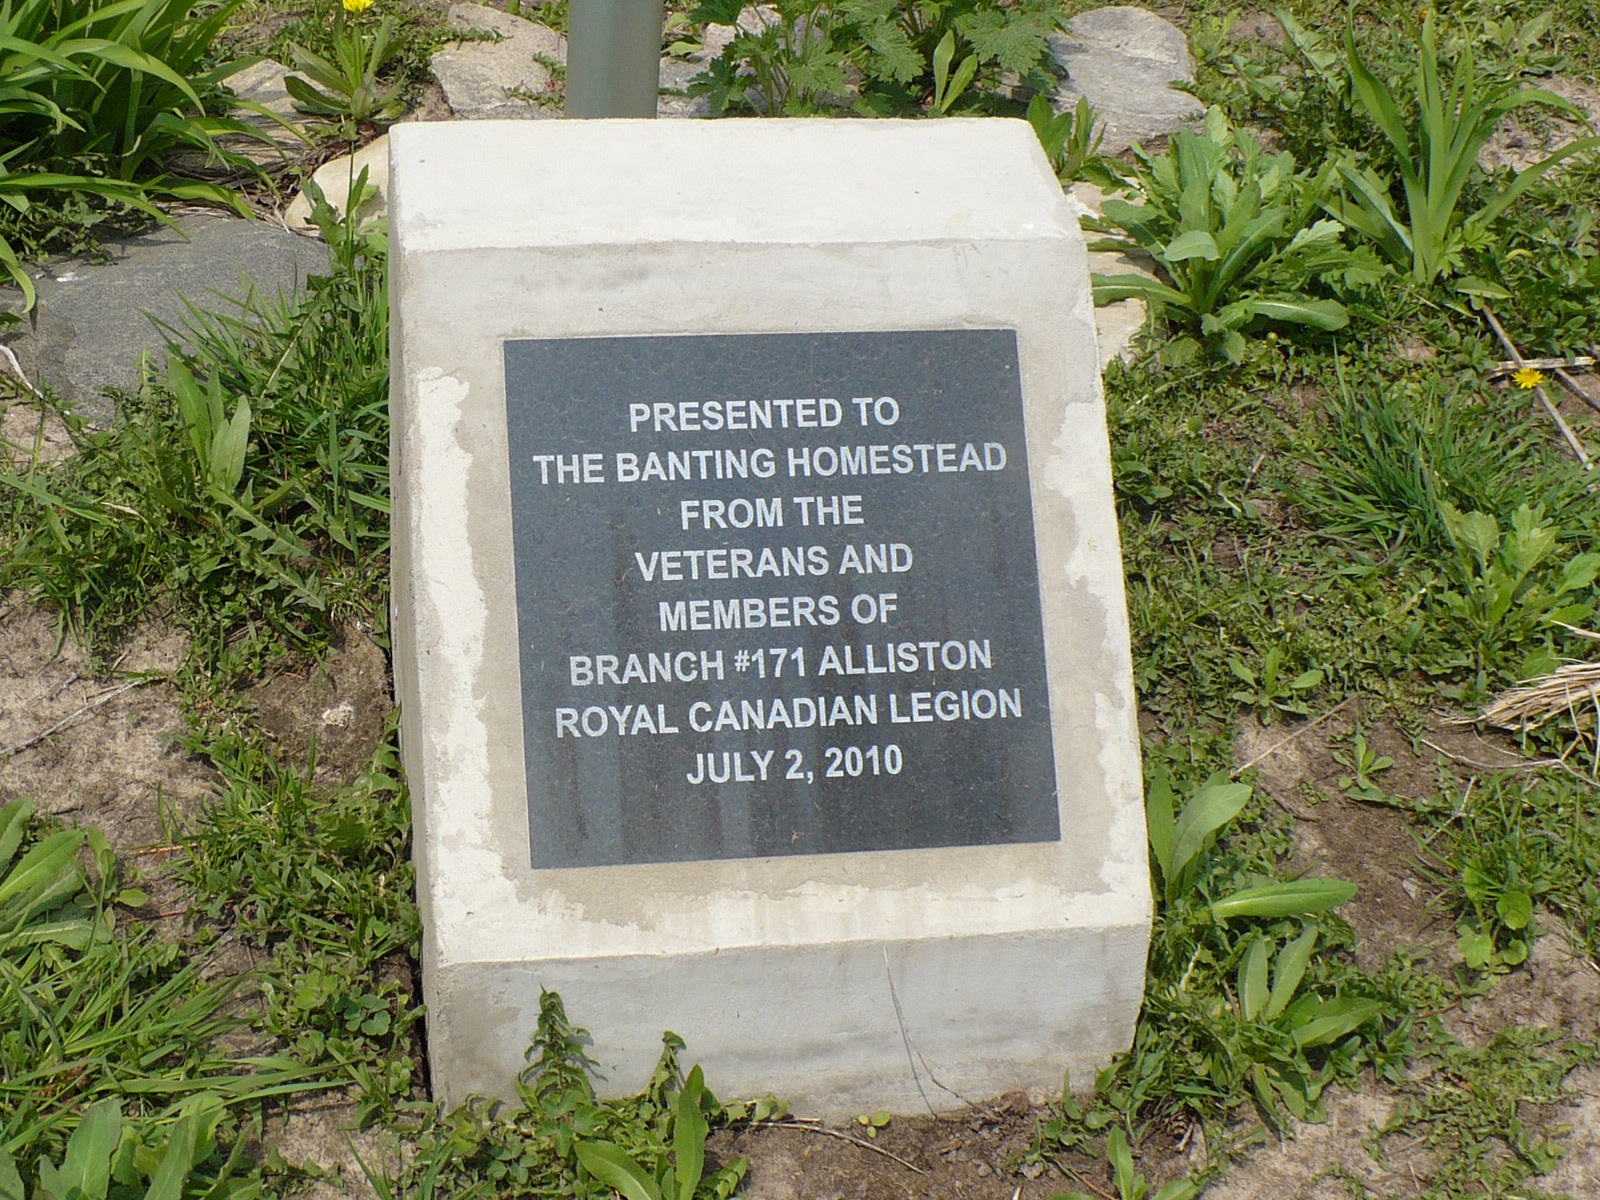 dedication plaque